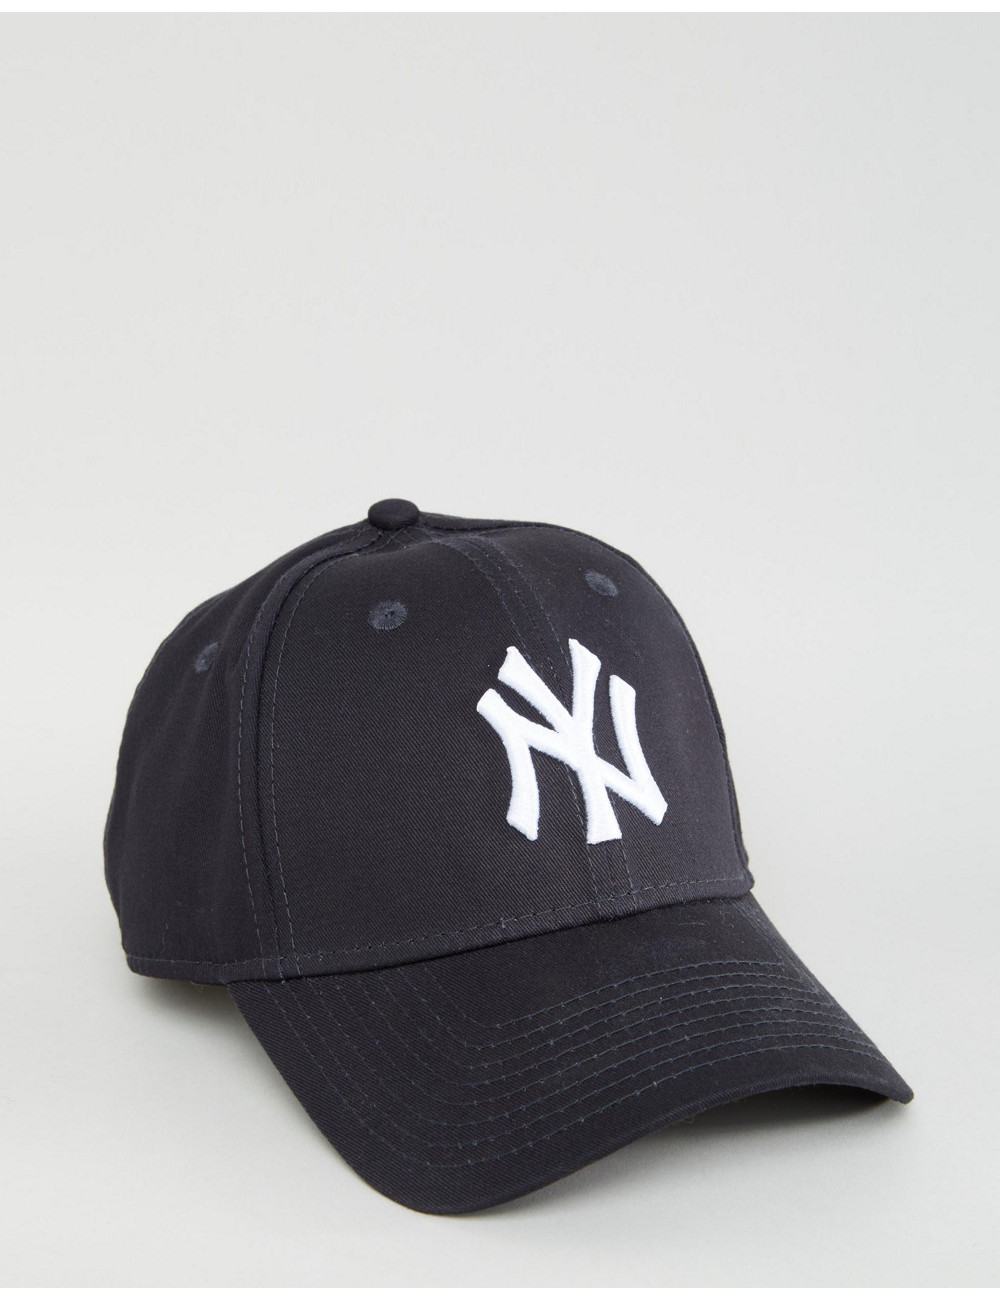 New Era 9forty NY navy cap